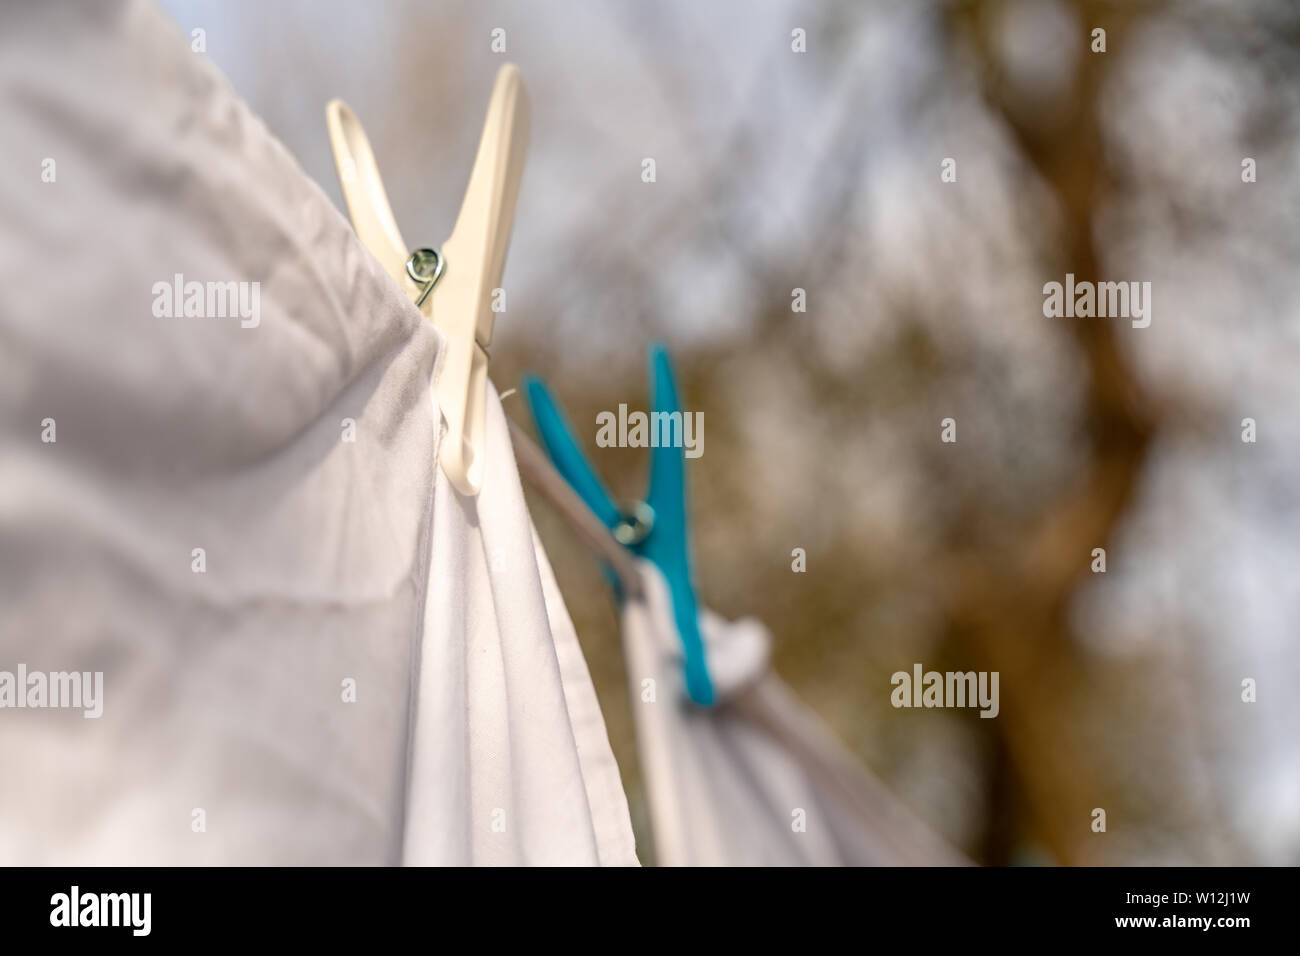 Weiße Kleidung hingen auf einer Wäscheleine zum Trocknen und befestigt die Wäscheklammern im hellen warmen sonnigen Tag. Garten der Hintergrund verschwommen. Stockfoto